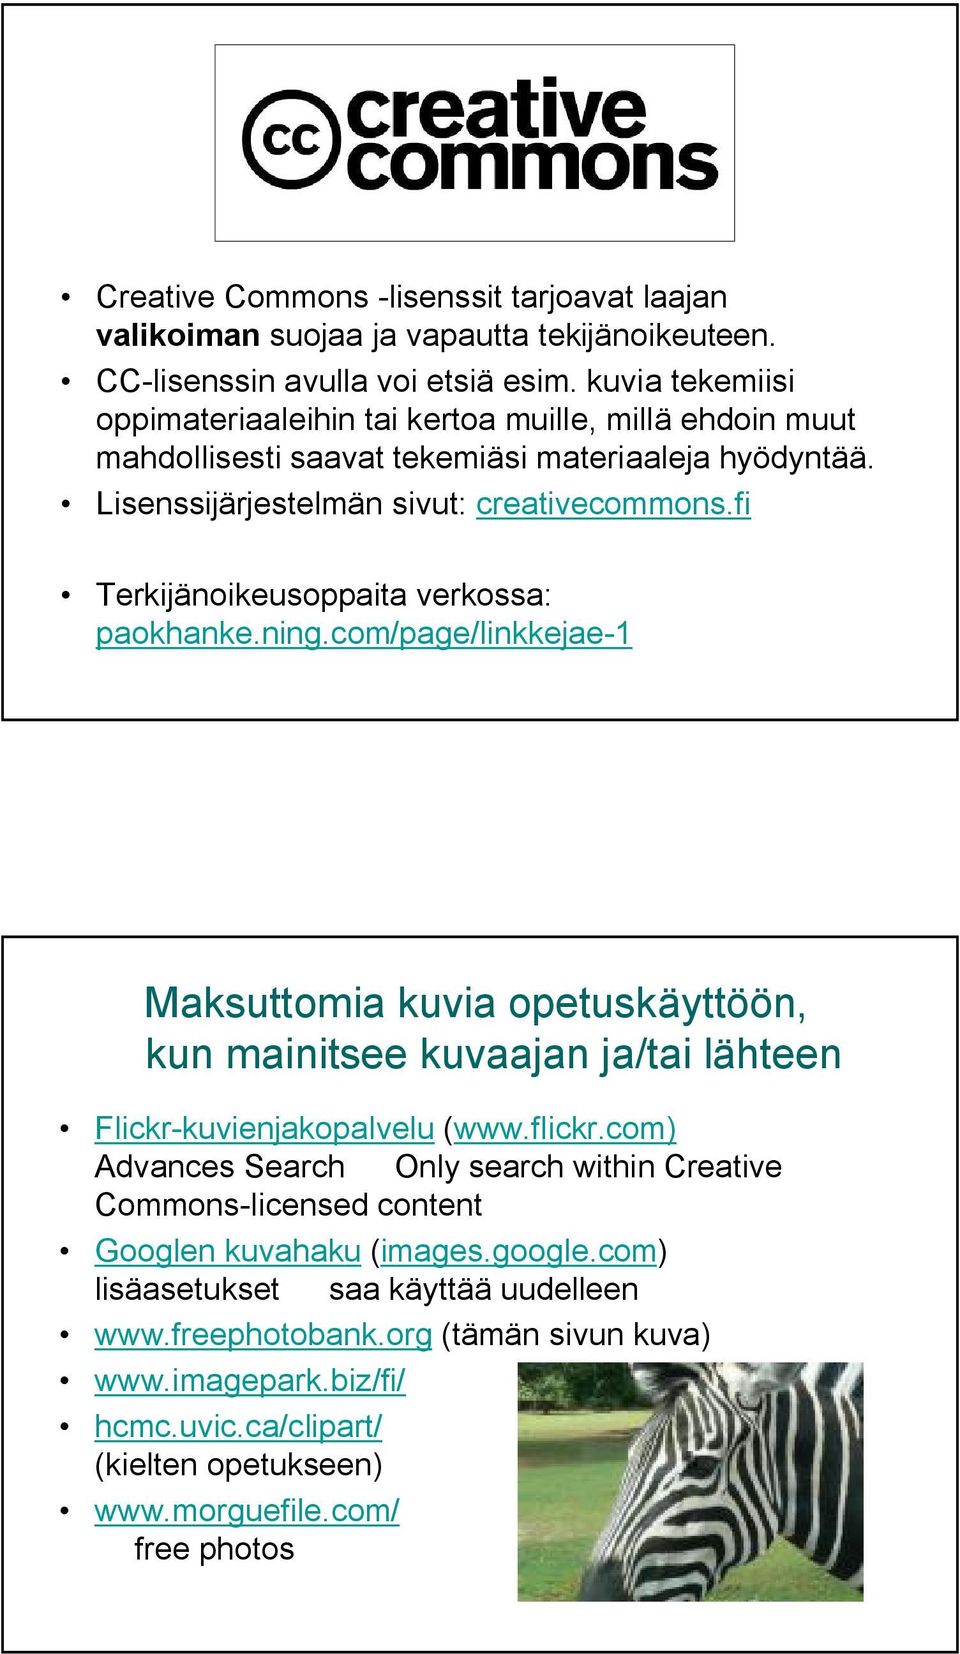 fi Terkijänoikeusoppaita verkossa: paokhanke.ning.com/page/linkkejae 1 Maksuttomia kuvia opetuskäyttöön, kun mainitsee kuvaajan ja/tai lähteen Flickr kuvienjakopalvelu (www.flickr.